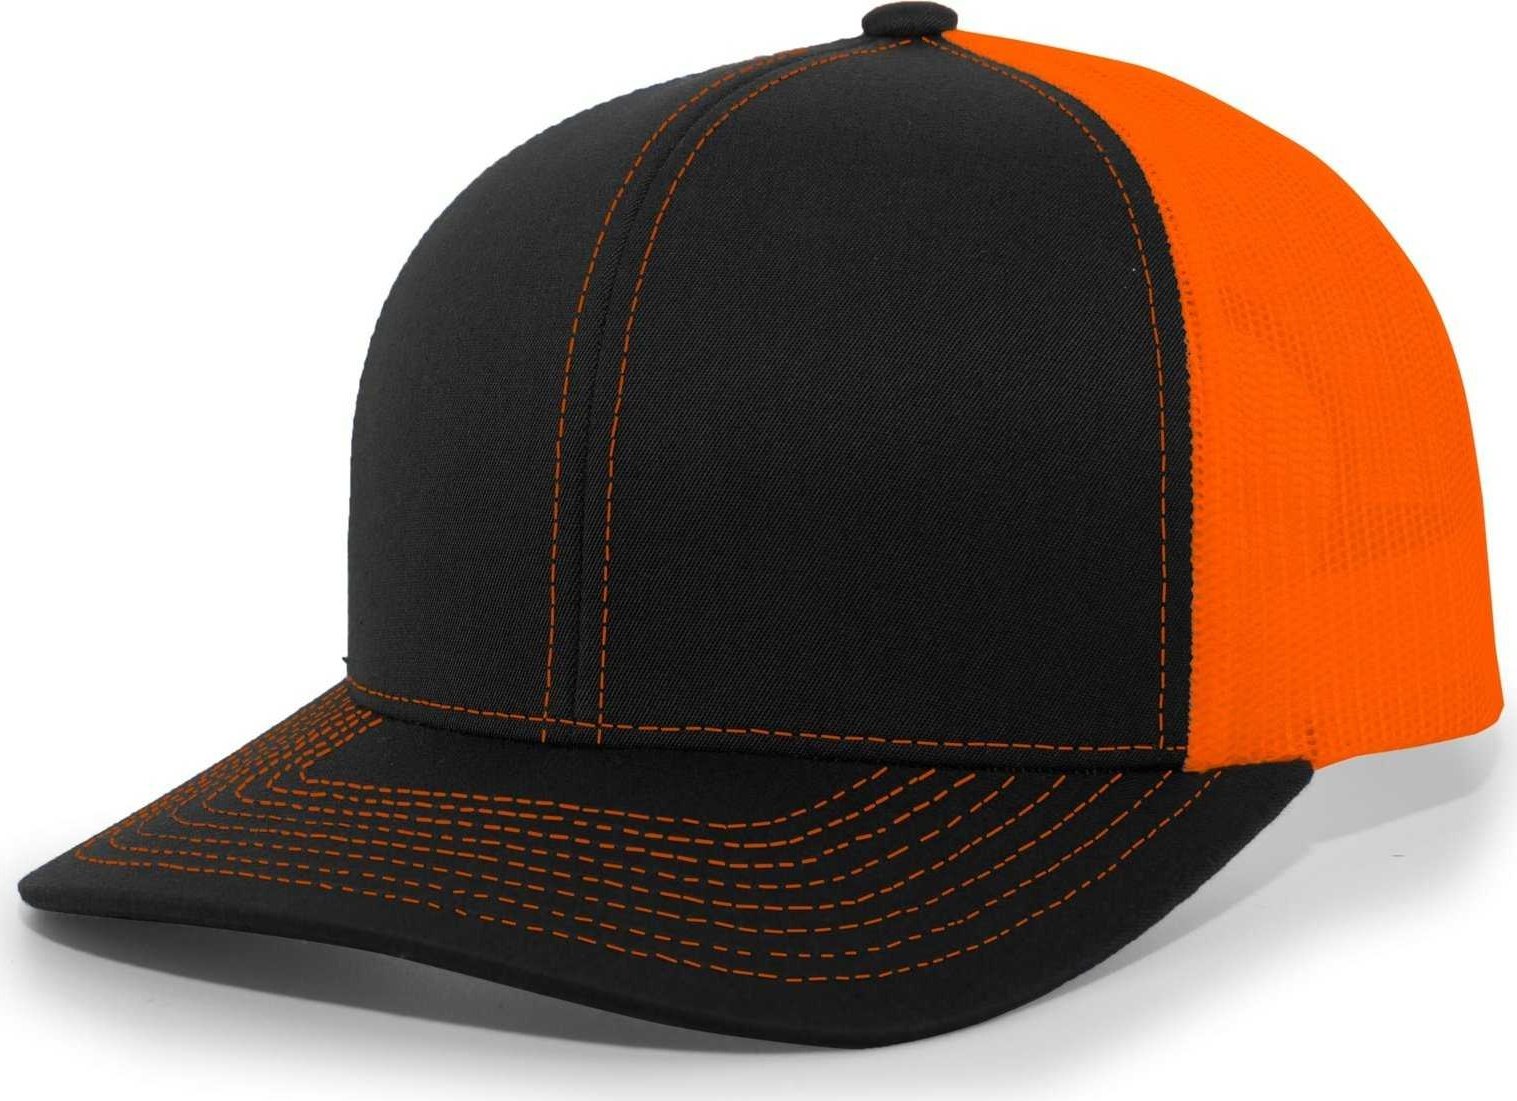 Pacific Headwear 104C Trucker Snapback Cap - Black Neon Orange - HIT a Double